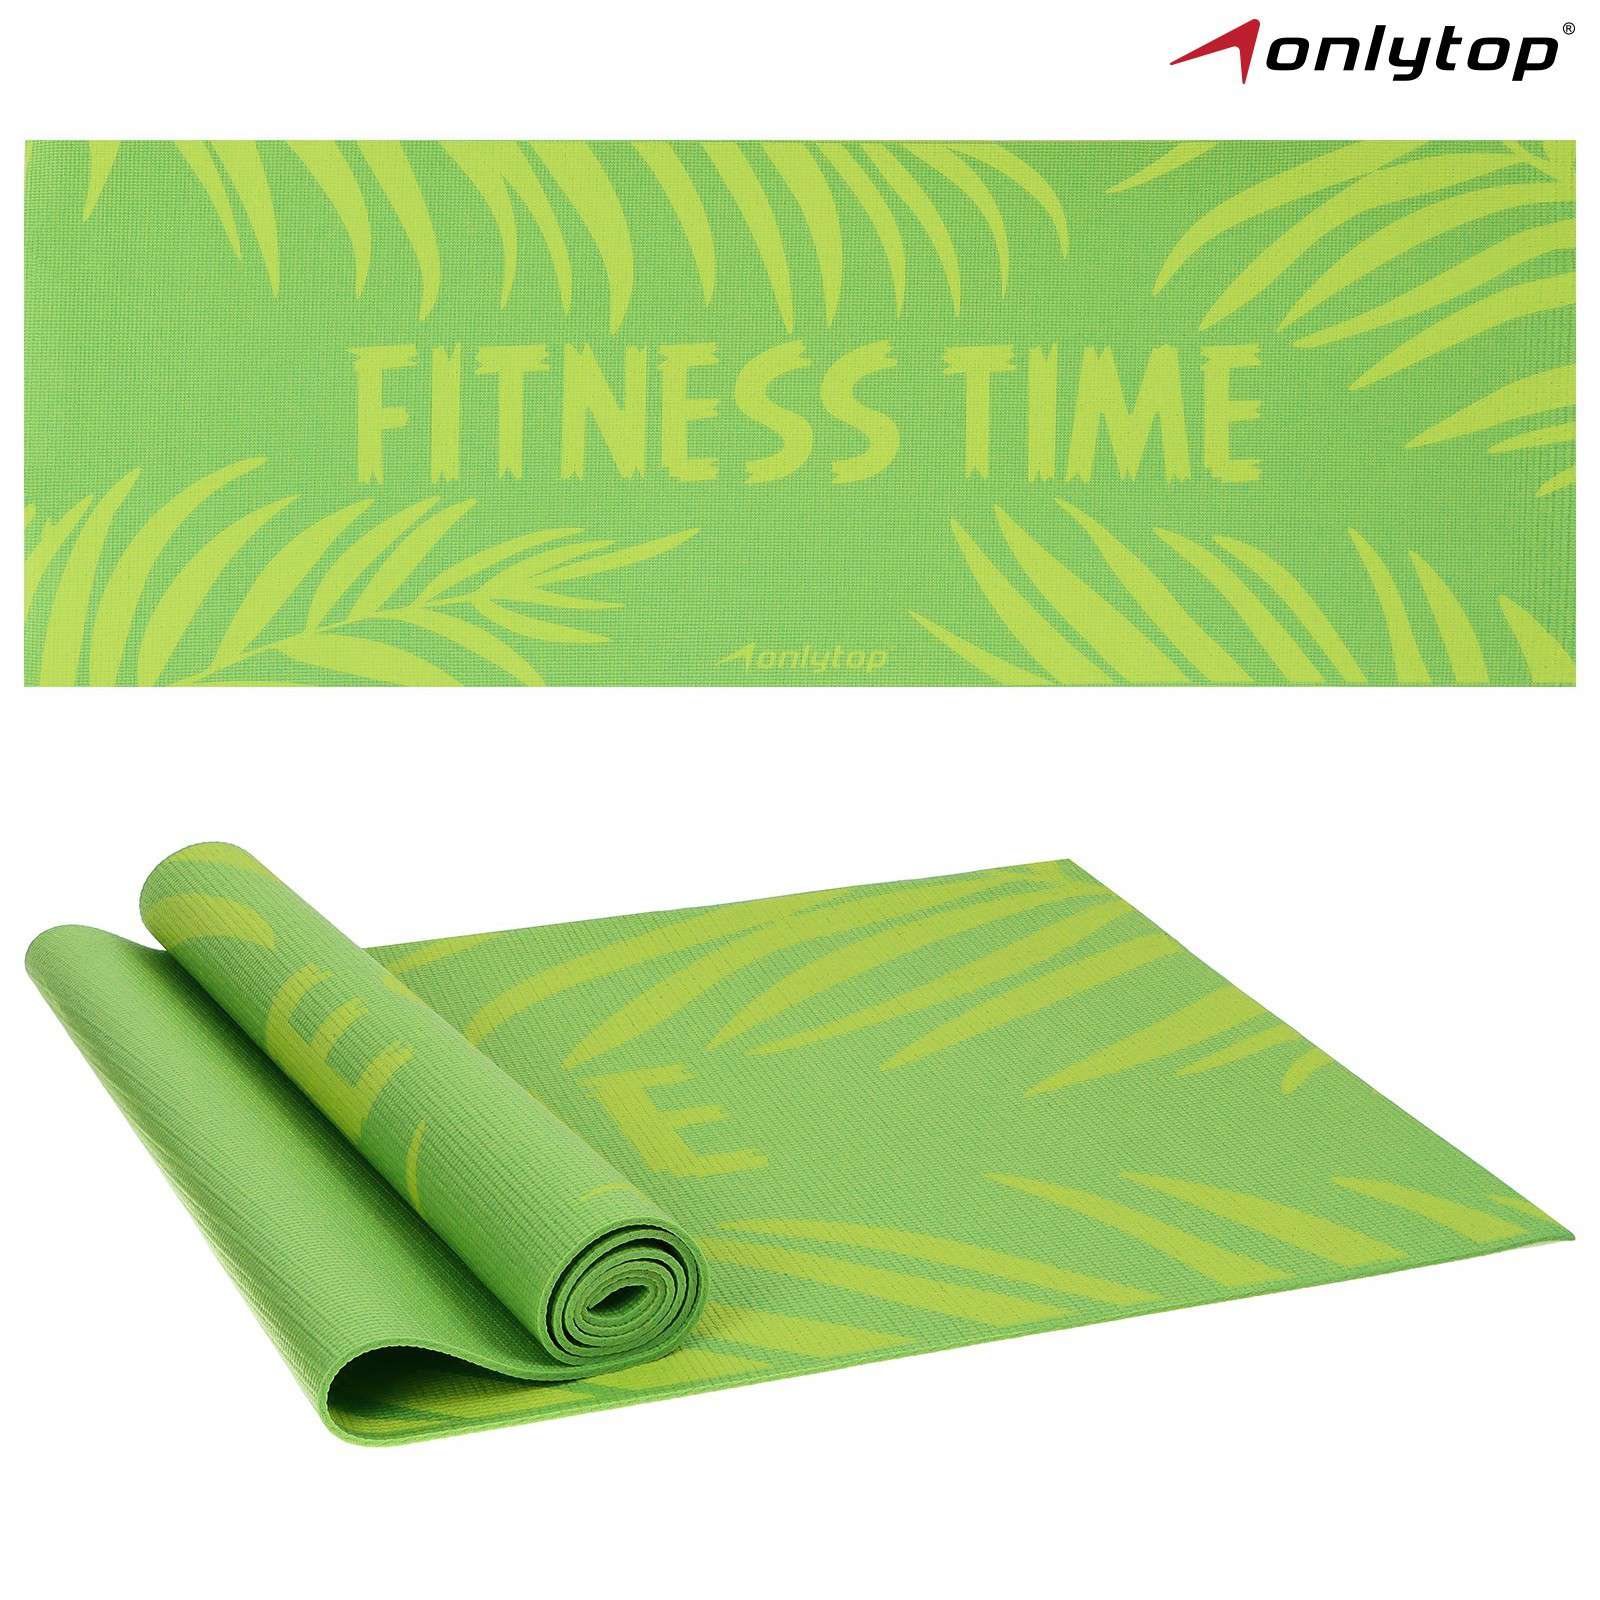 Коврик для фитнеса 7387391 Fitness time 173*61*0,4см цвет зелёный - Елабуга 